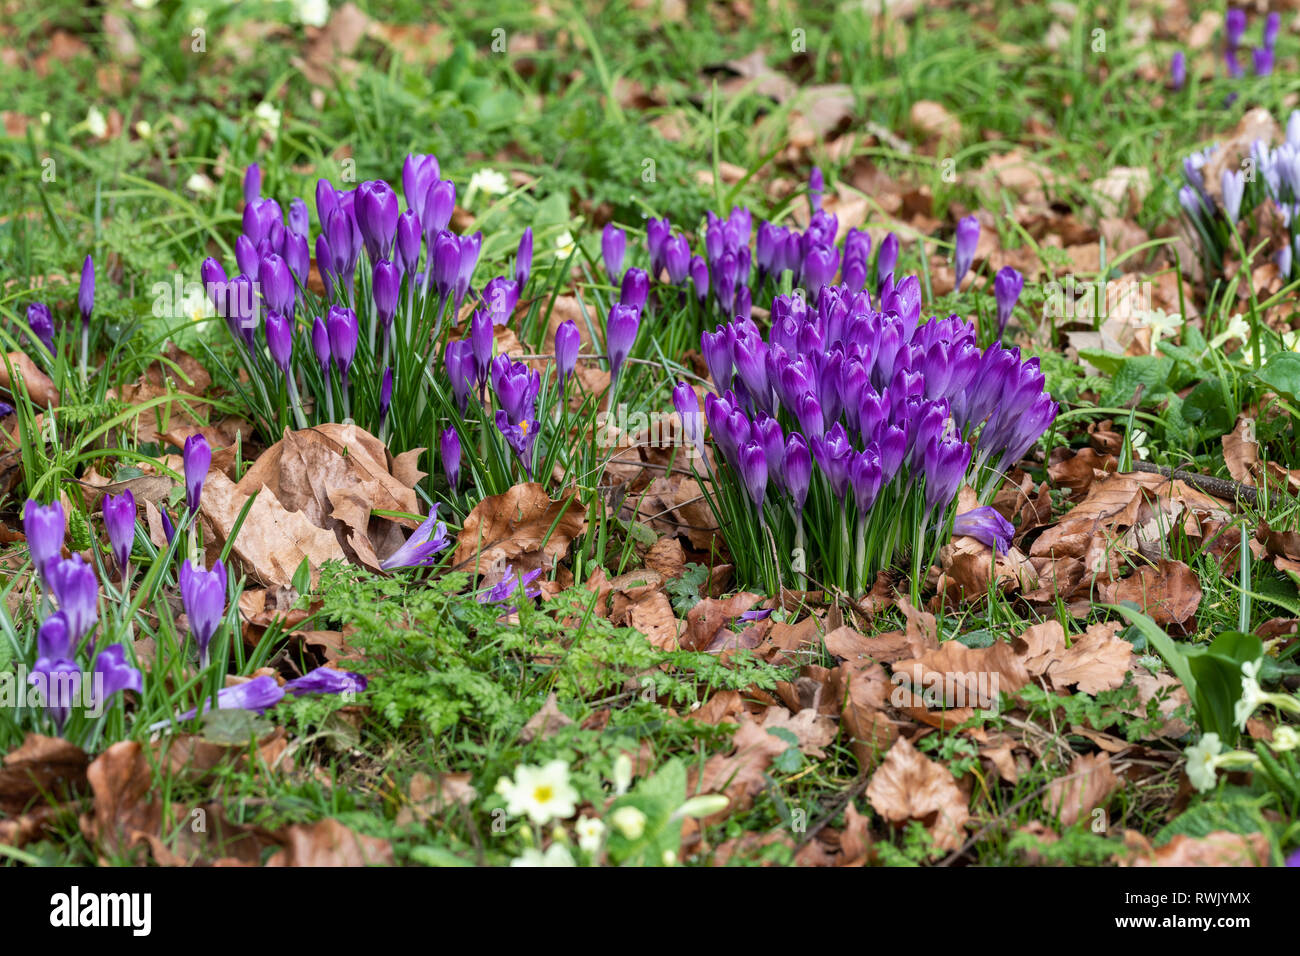 Nahaufnahme der Klumpen des purpurnen Krokus, der in einem Frühlinggarten im Vereinigten Königreich unter dem Gras blüht Stockfoto